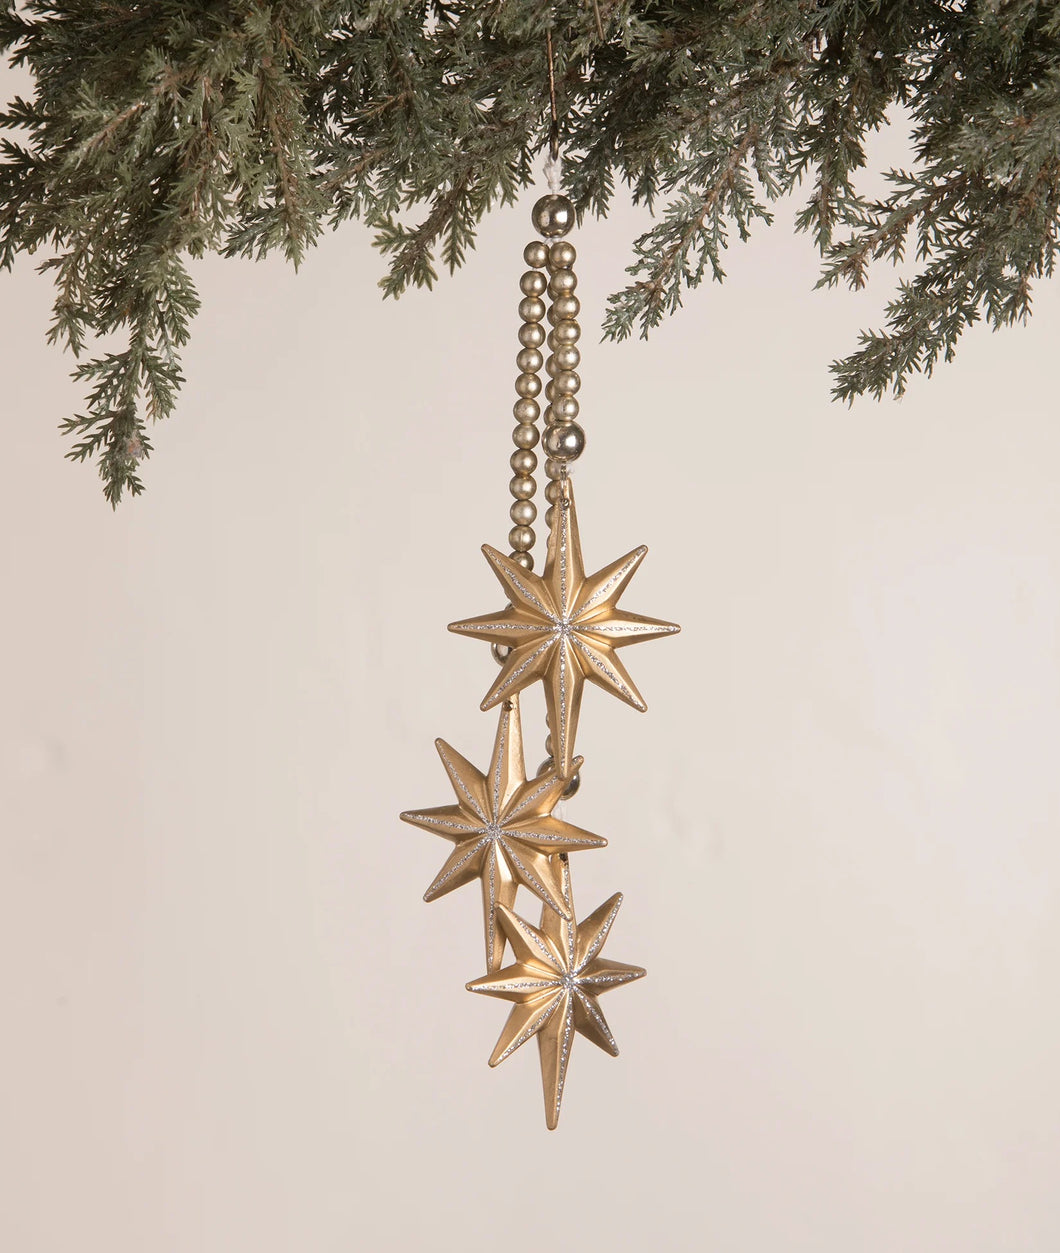 LC0653 - Star Dangle Ornament (6714746699842)